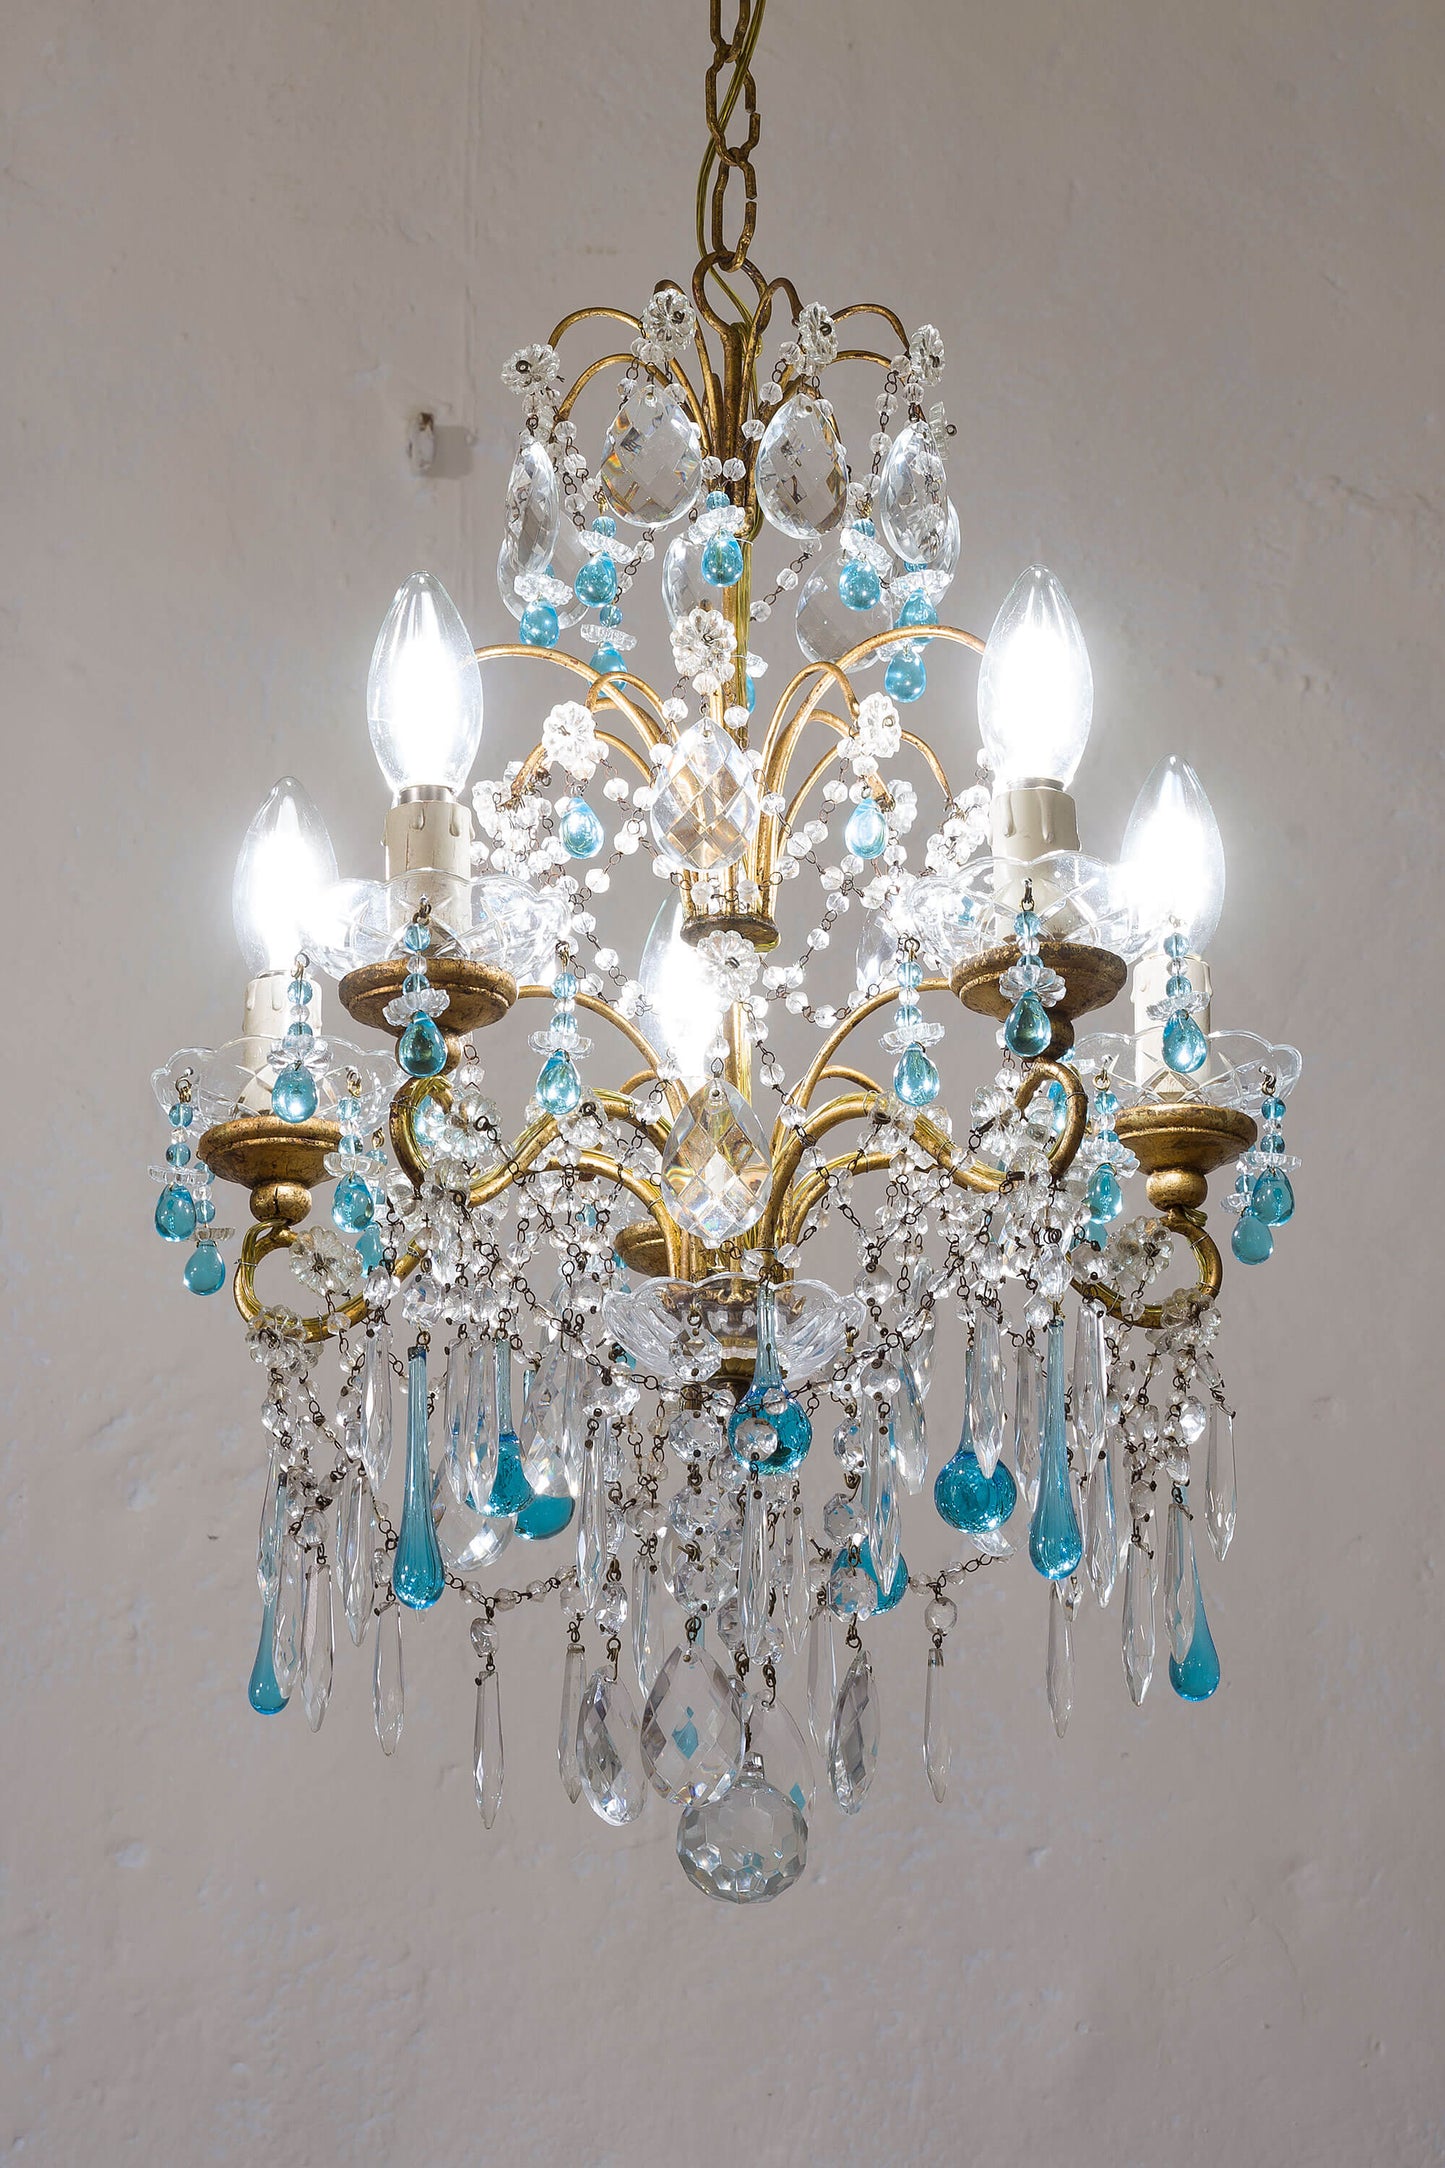 Gocce di vetro di Murano azzurro adornano il lampadario Fiorentino retrò. | Lo Stile Italiano